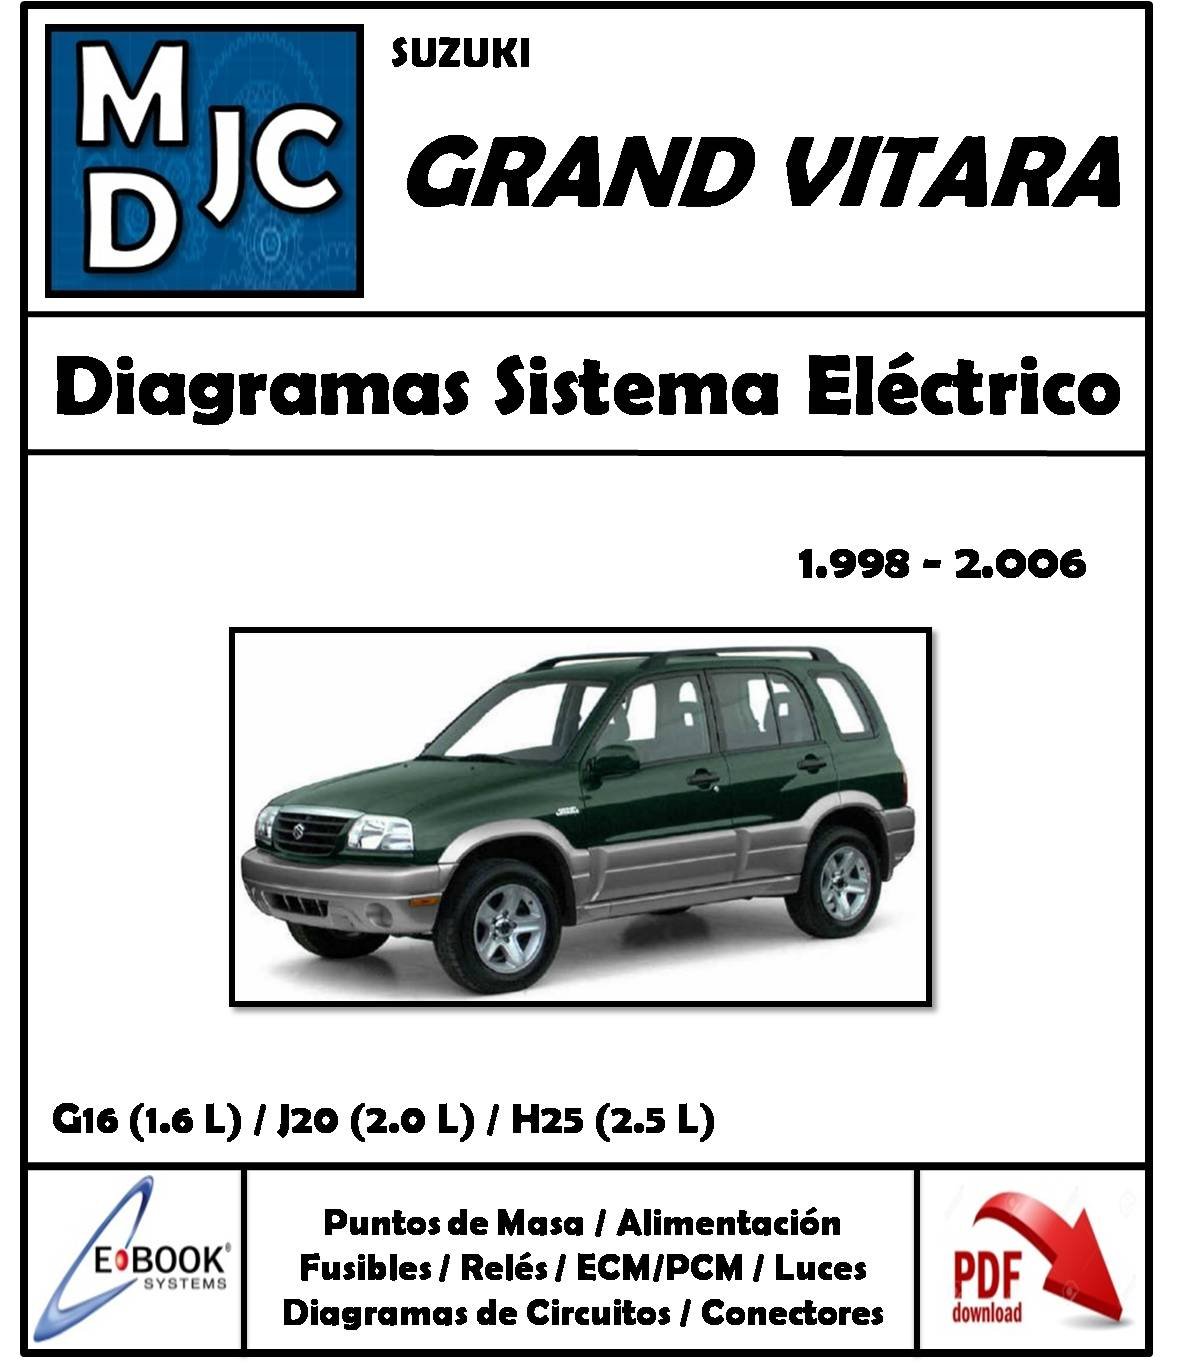 Diagramas de Cableado Sistema Eléctrico Chevrolet Suzuki Grand Vitara 1998-2006